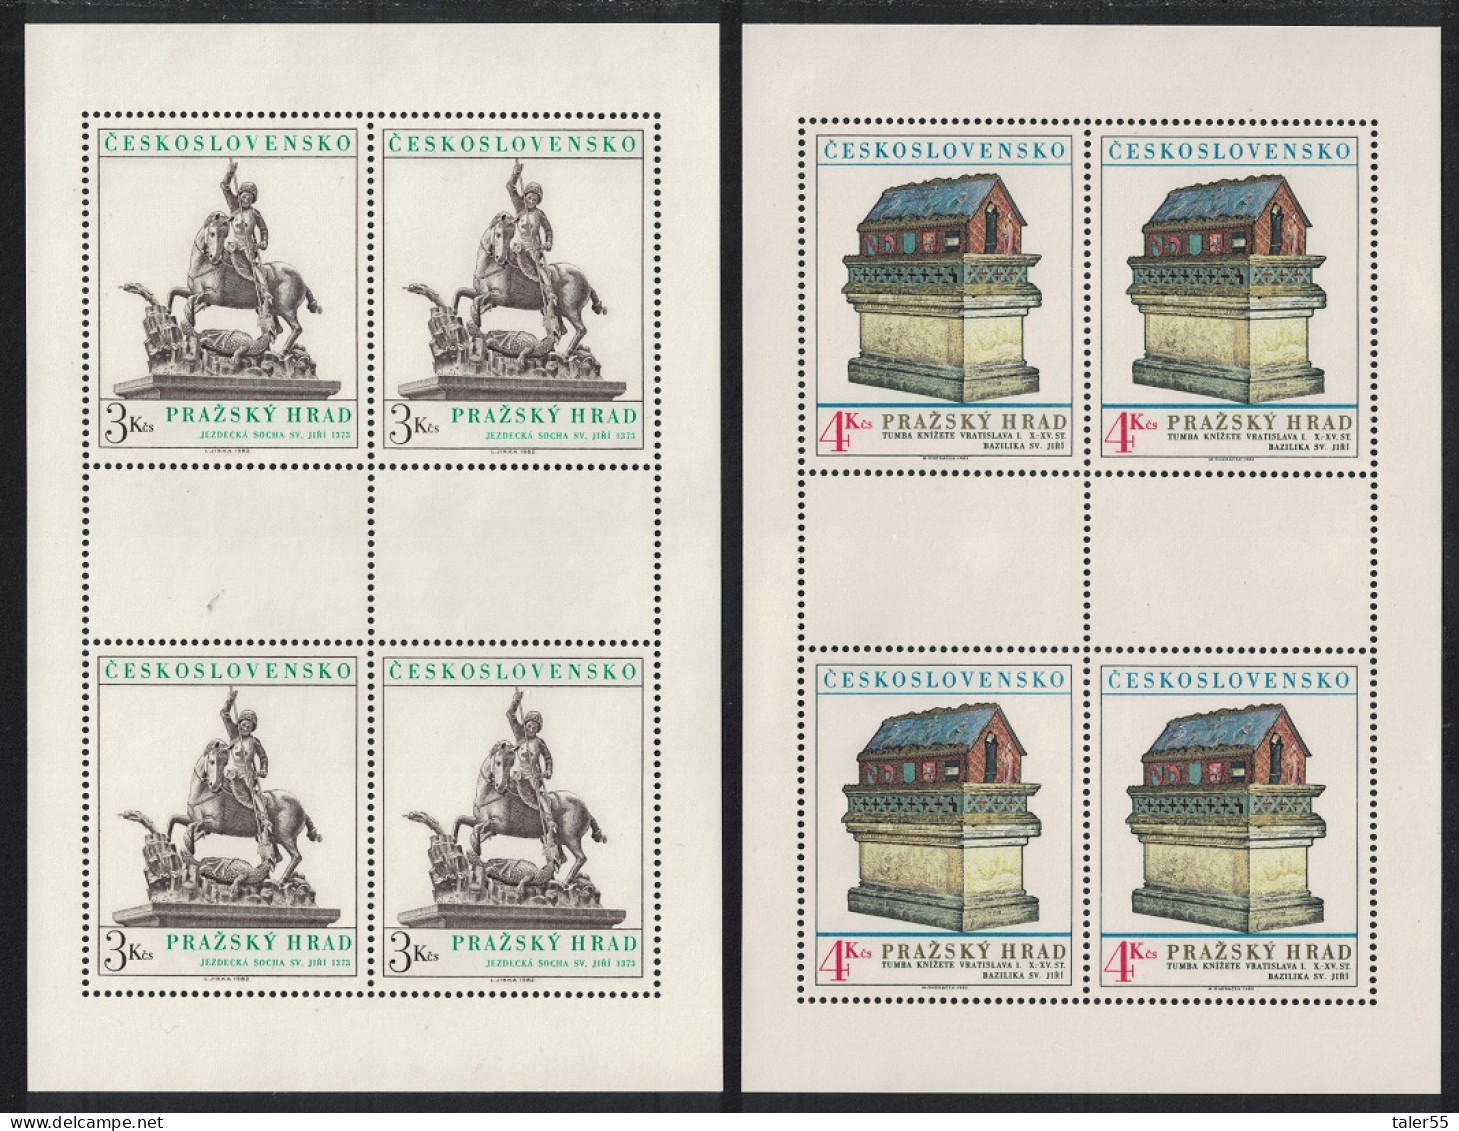 Czechoslovakia Prague Castle 18th Series 2 Sheetlets 1982 MNH SG#2637-2638 - Nuovi